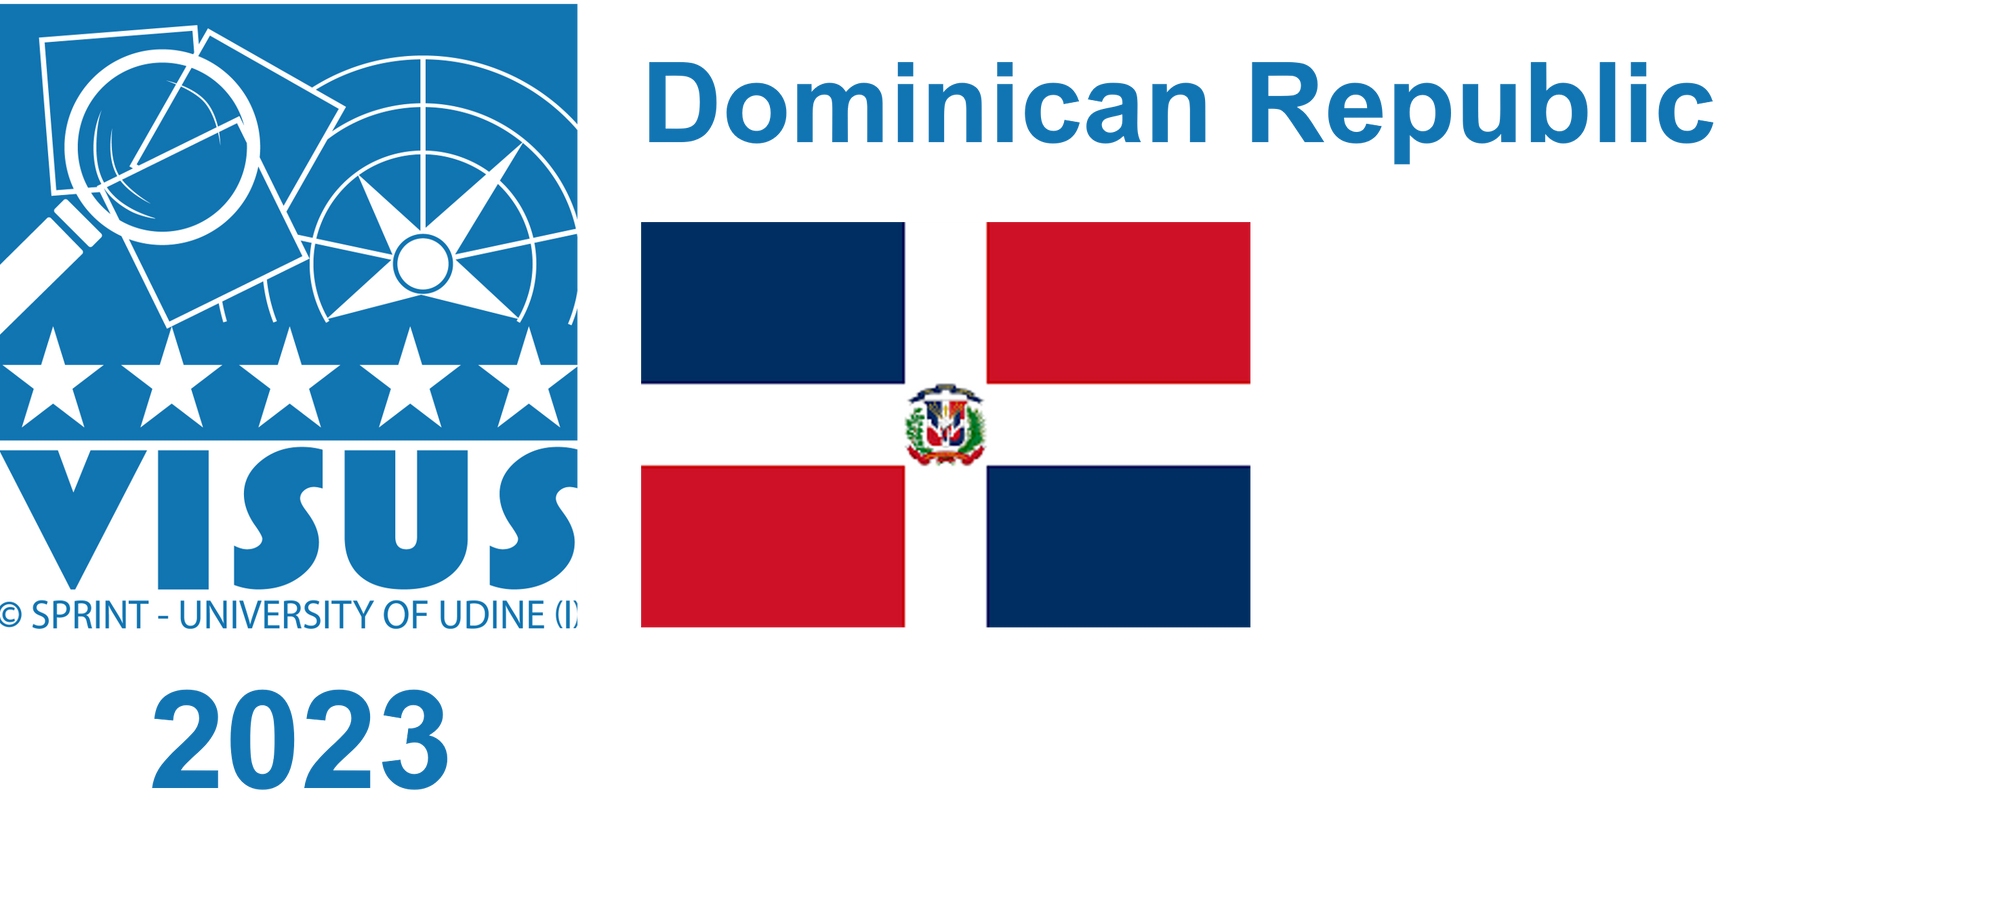 Dominican Republic, 2023